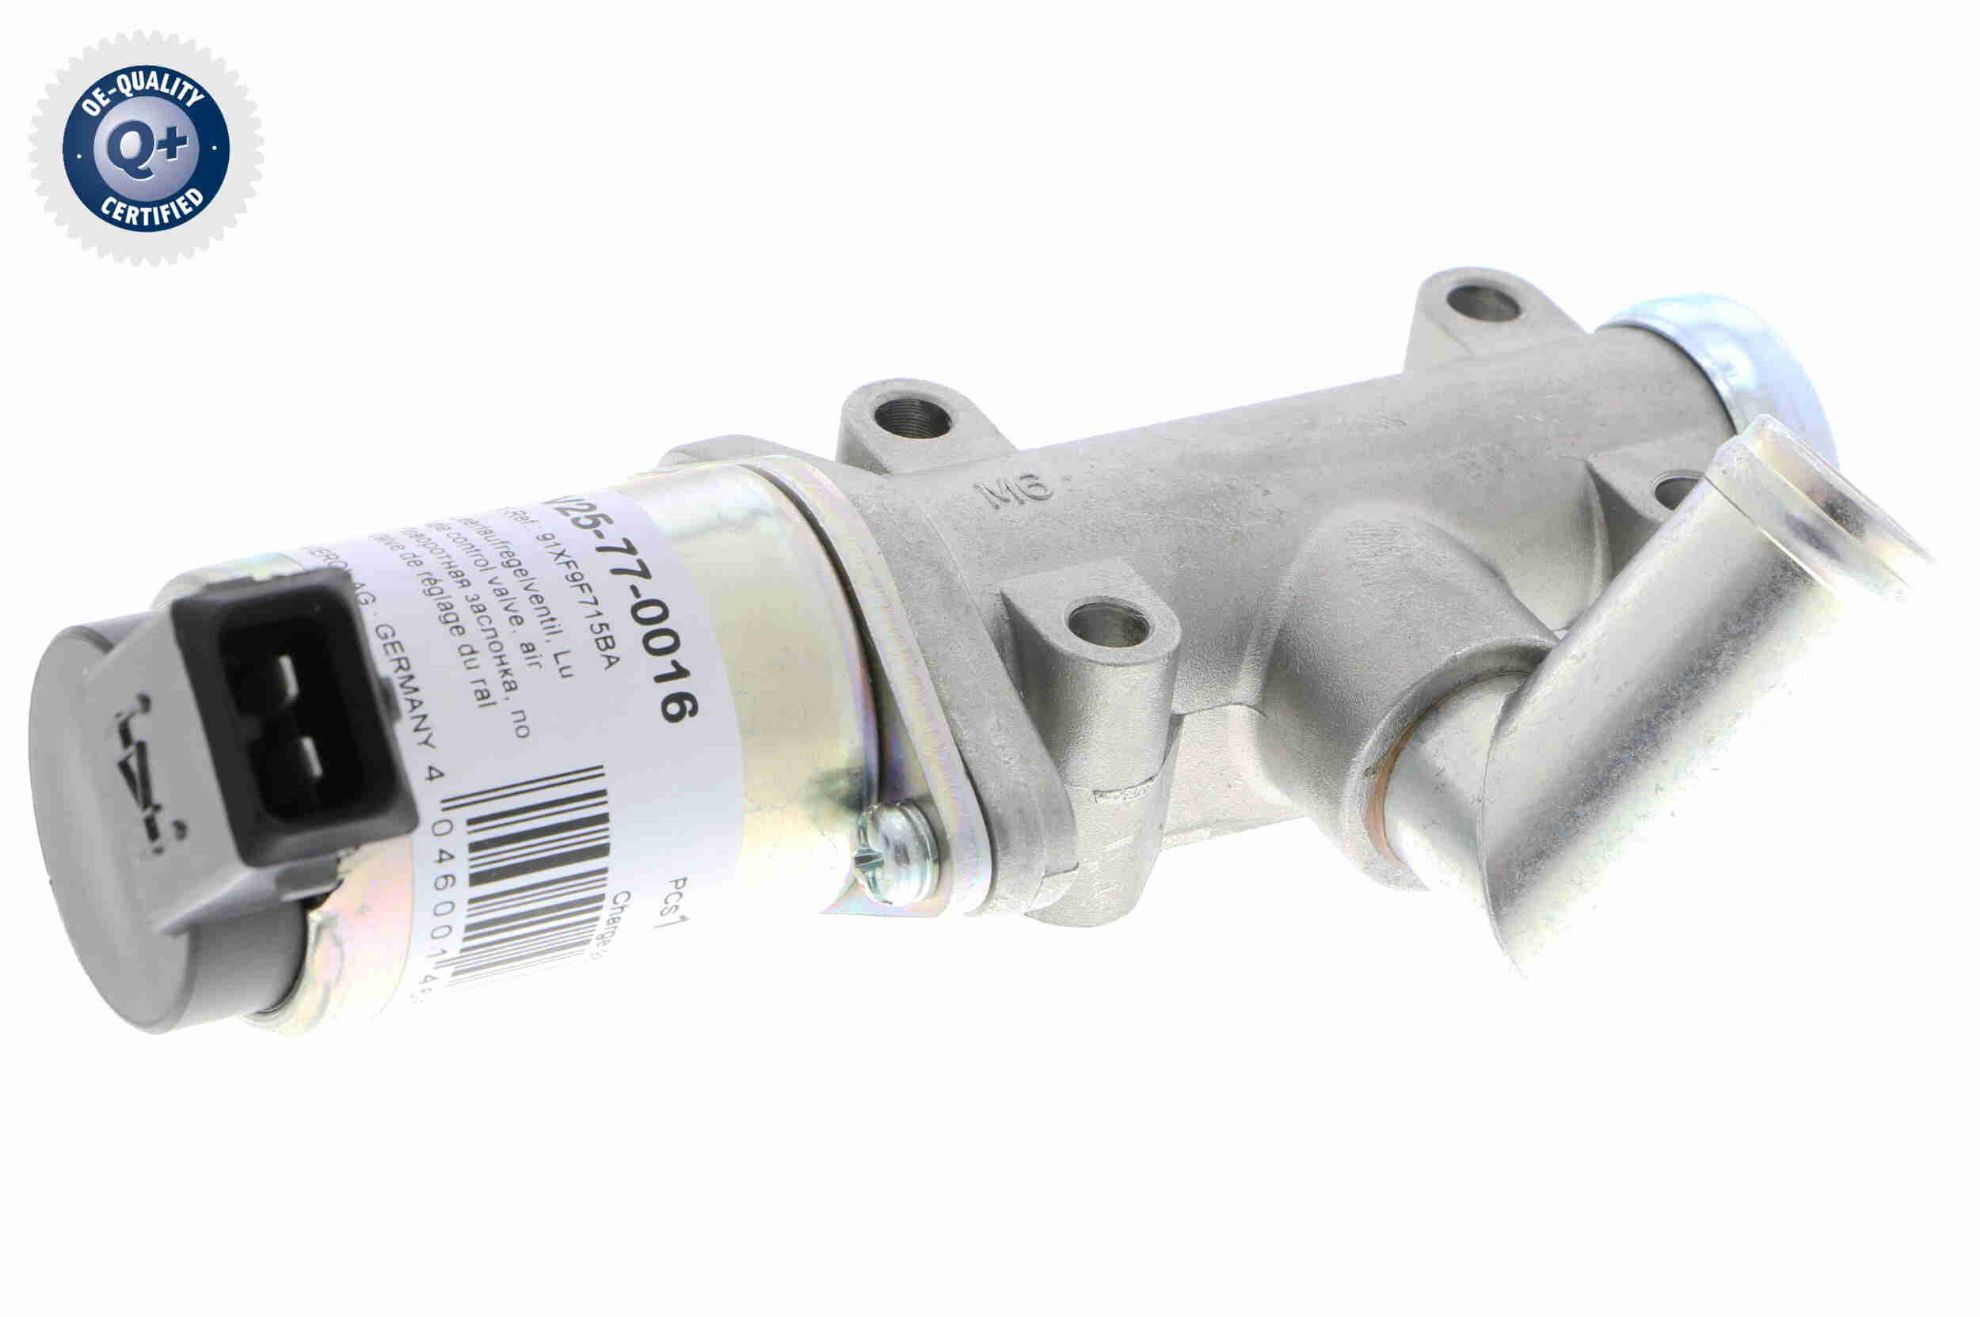 Obrázok Regulačný ventil voľnobehu (Riadenie prívodu vzduchu) VEMO Q+, original equipment manufacturer quality V25770016